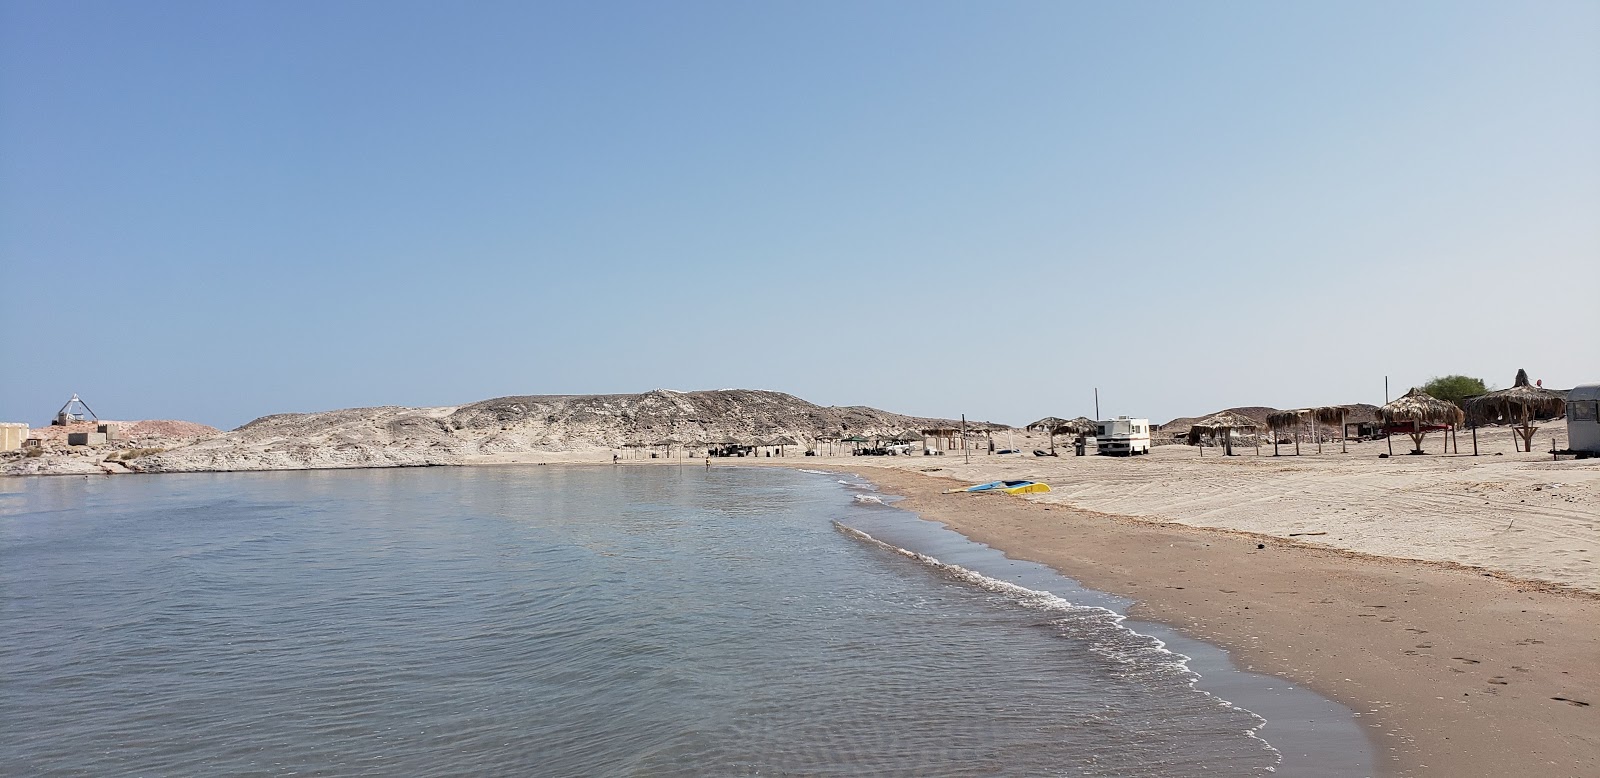 Fotografie cu Playa Escondida cu o suprafață de apa pură turcoaz